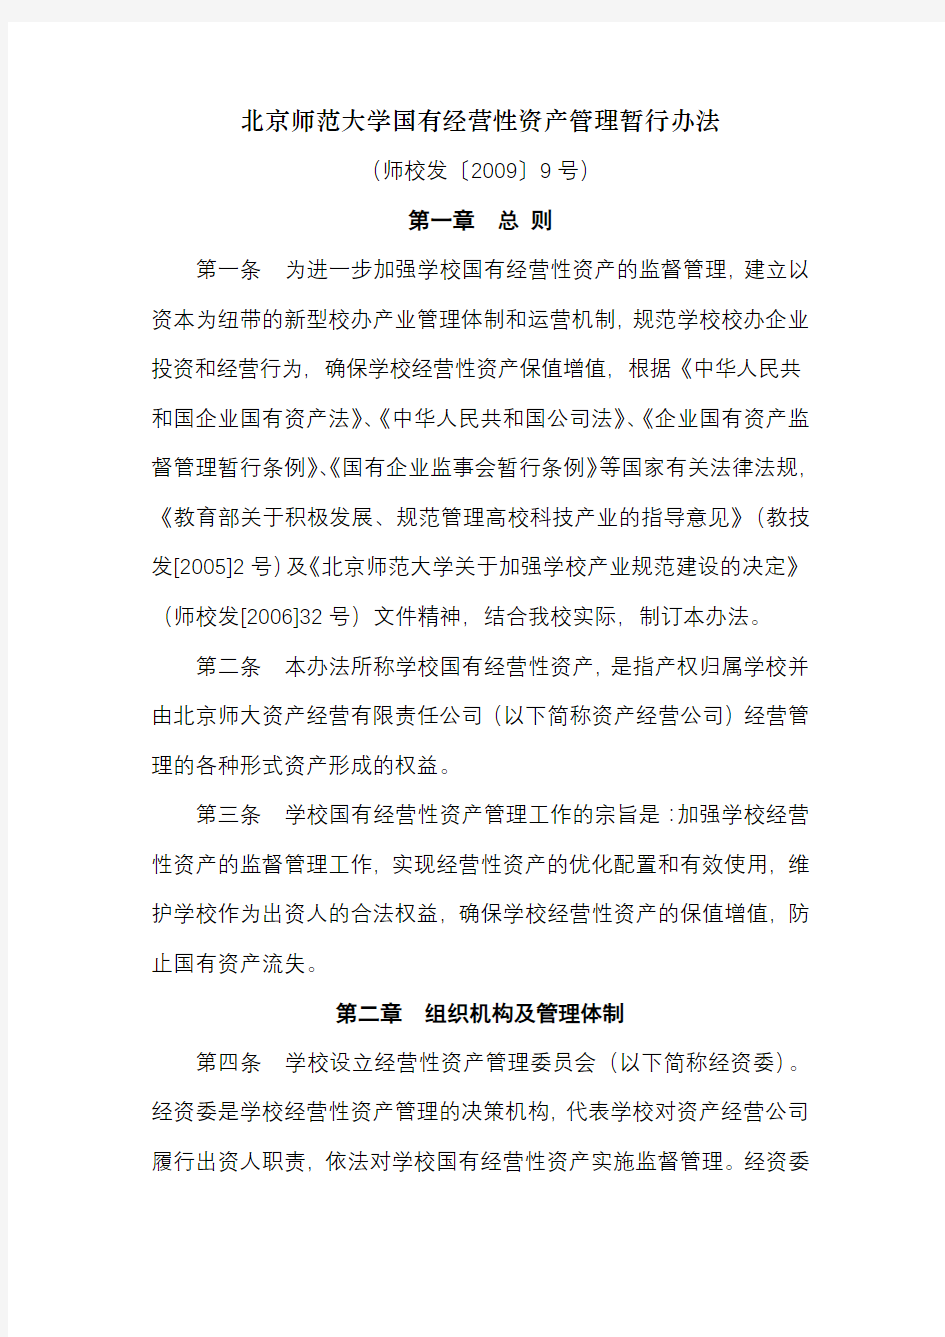 北京师范大学国有经营性资产管理暂行办法